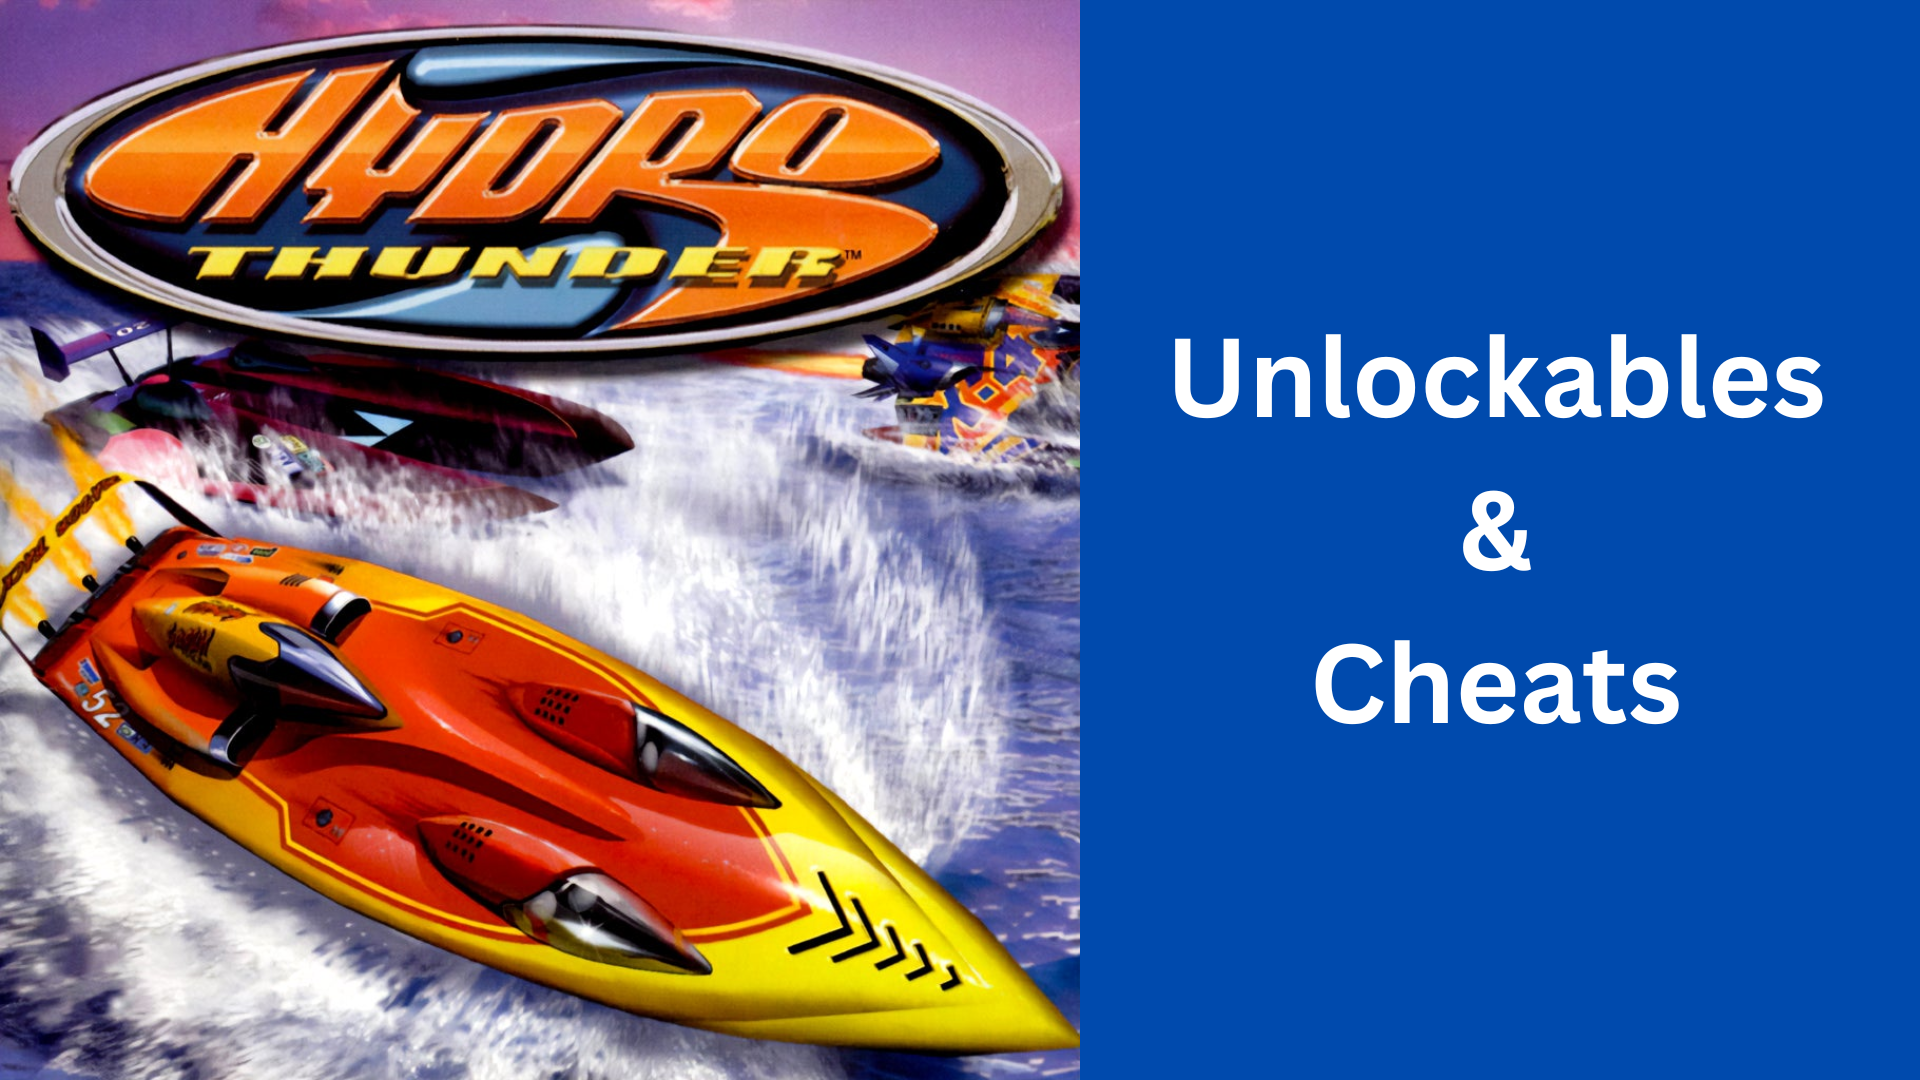 hydro thunder unlockables & cheats